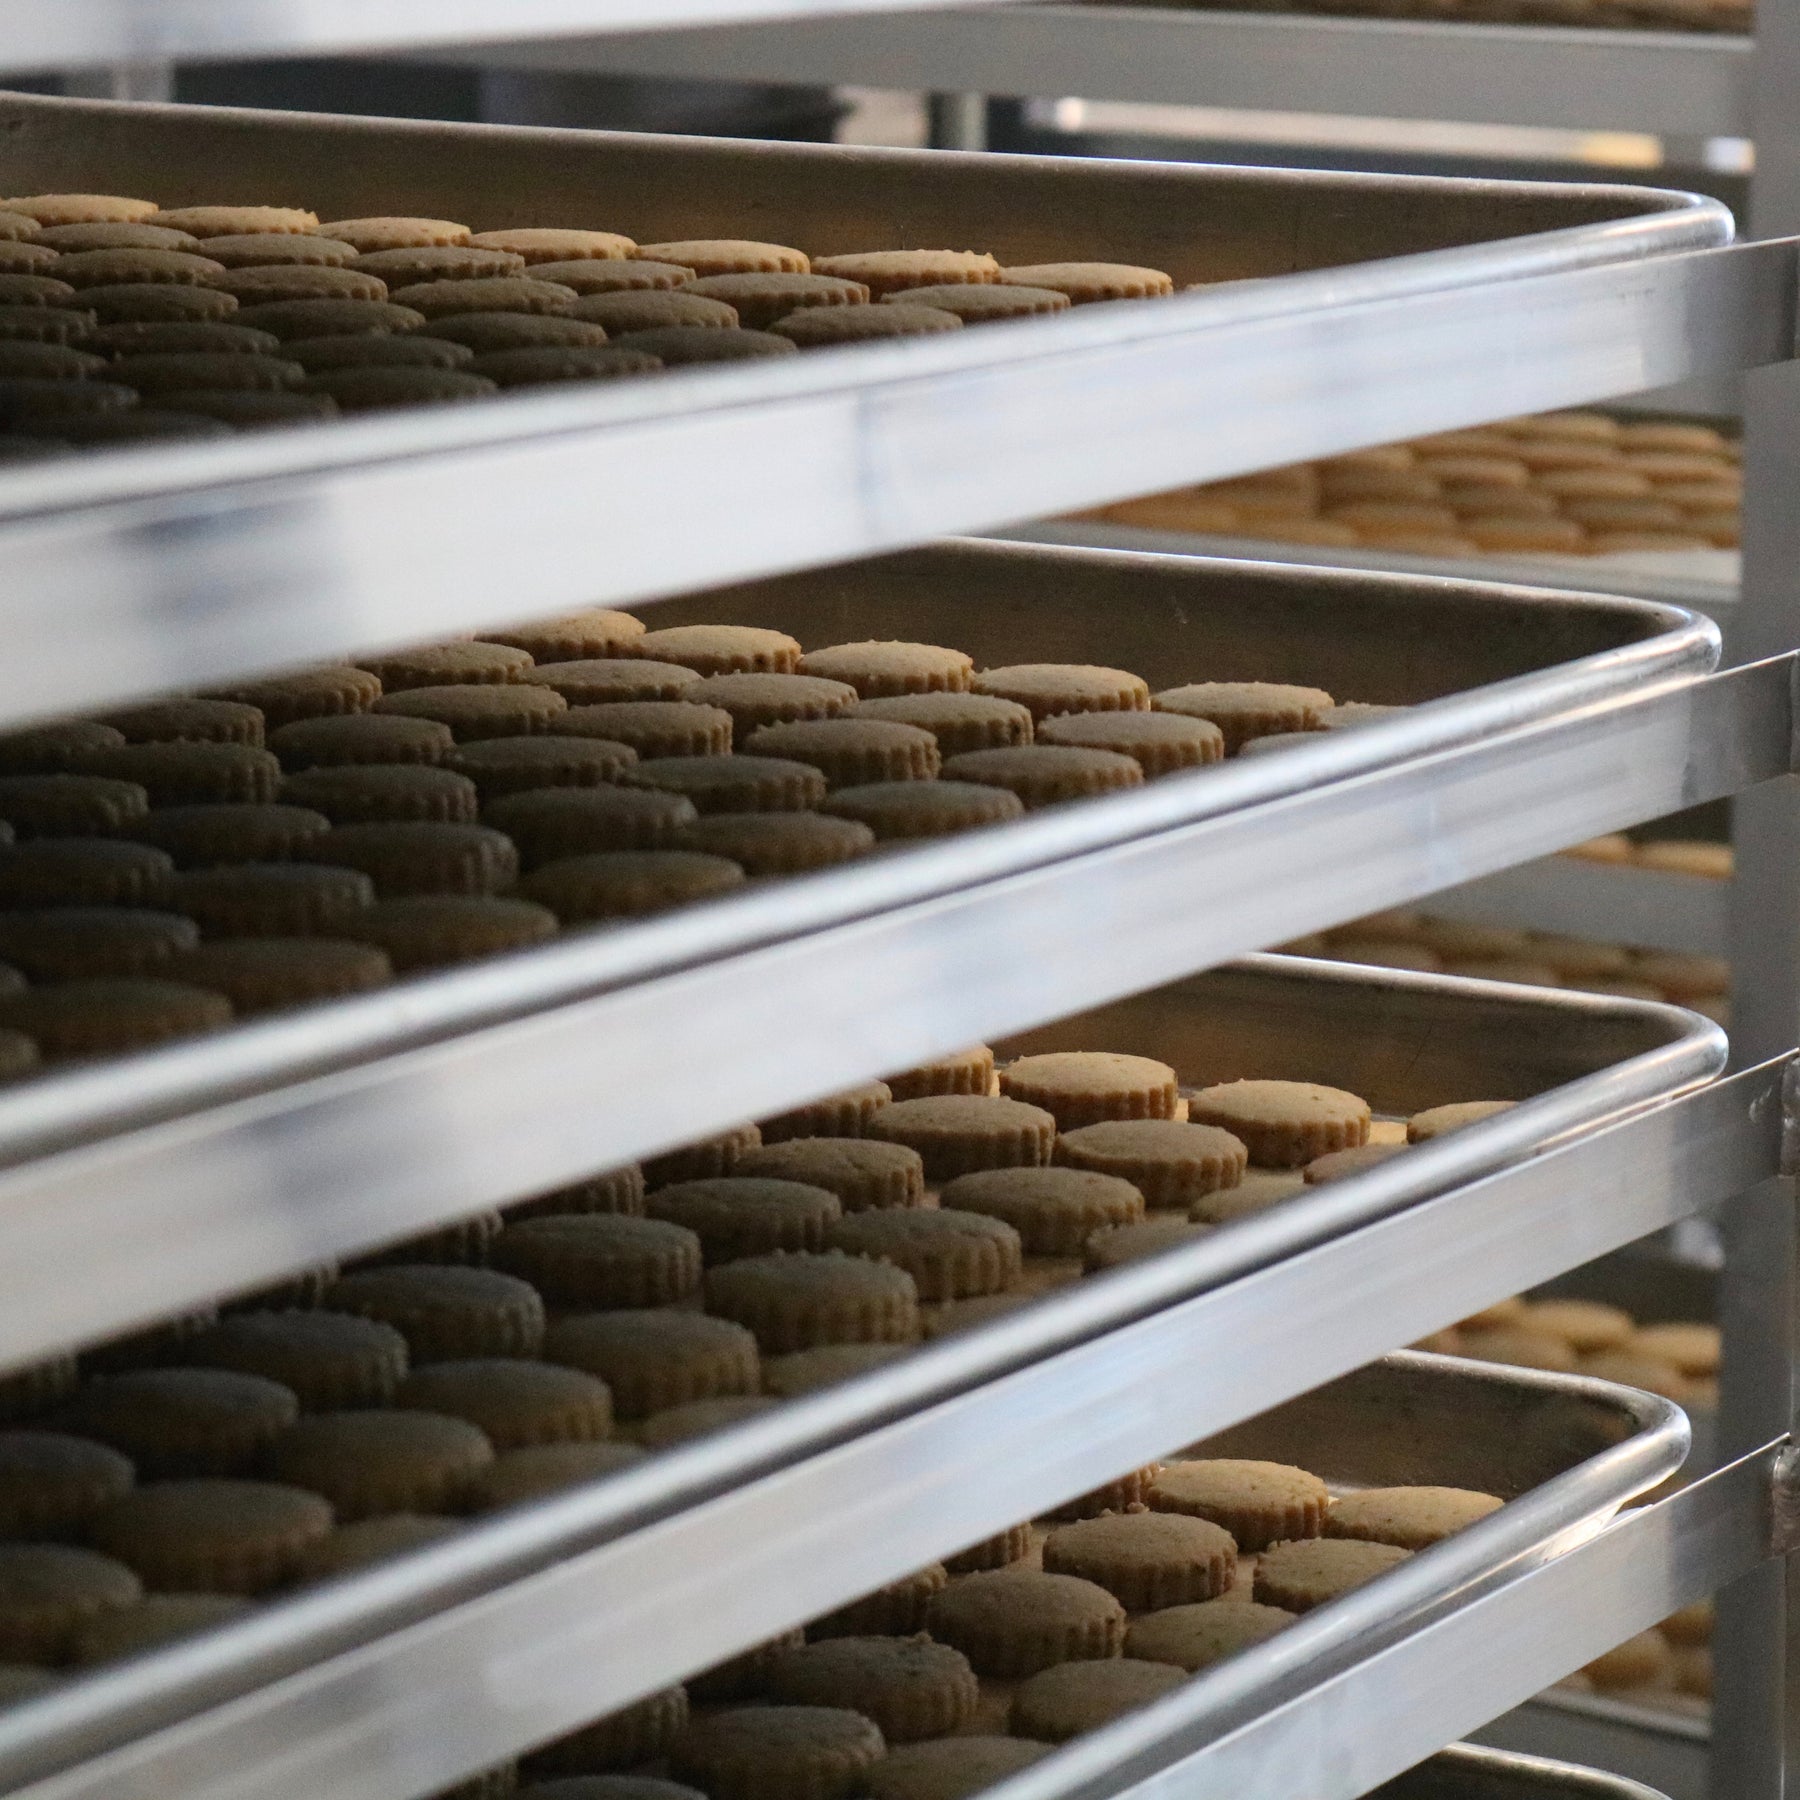 Douglas Sweets Shortbread Cookies on Sheet Tray in bakery